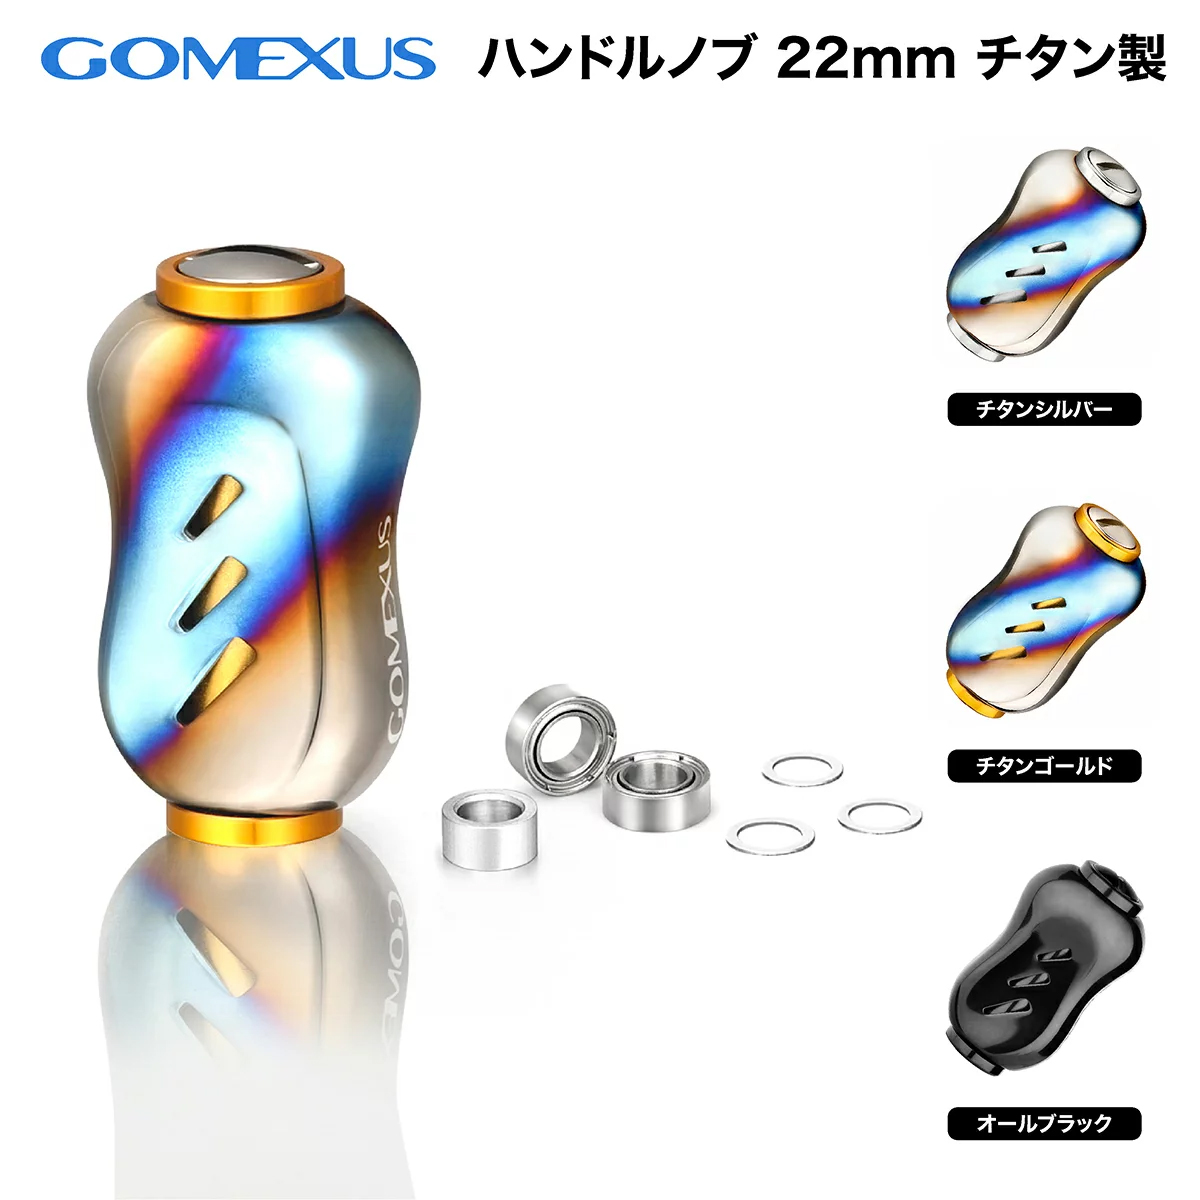 【楽天市場】【公式ストア】【送料無料】Gomexus ゴメクサス リールハンドルノブ 22mm シマノ Type A ダイワ Type S